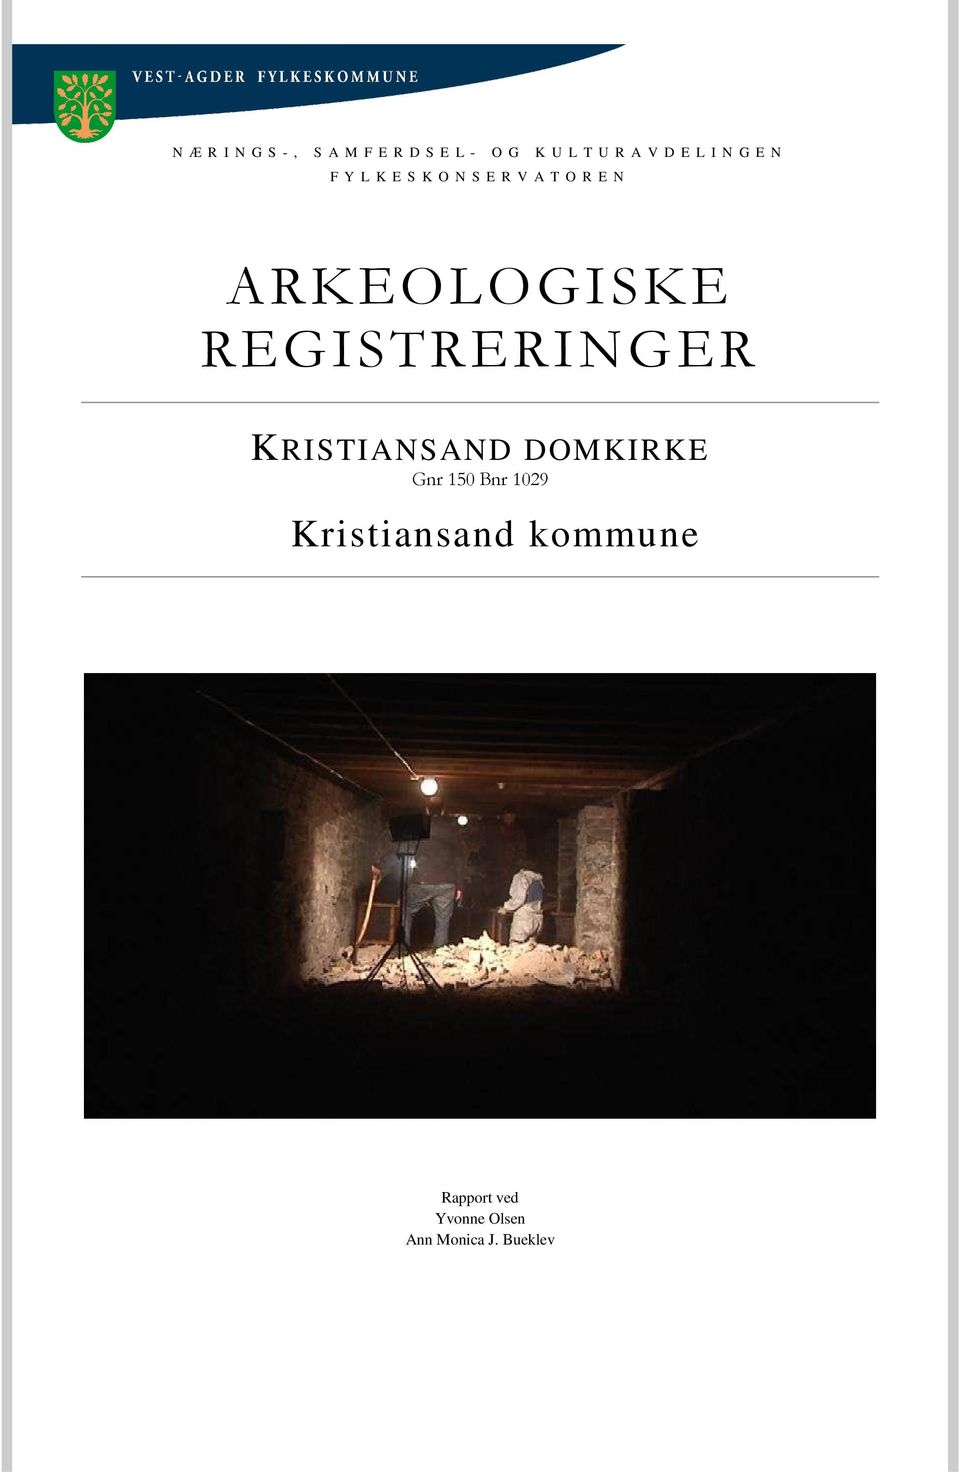 ARKEOLOGISKE REGISTRERINGER KRISTIANSAND DOMKIRKE Gnr 150 Bnr